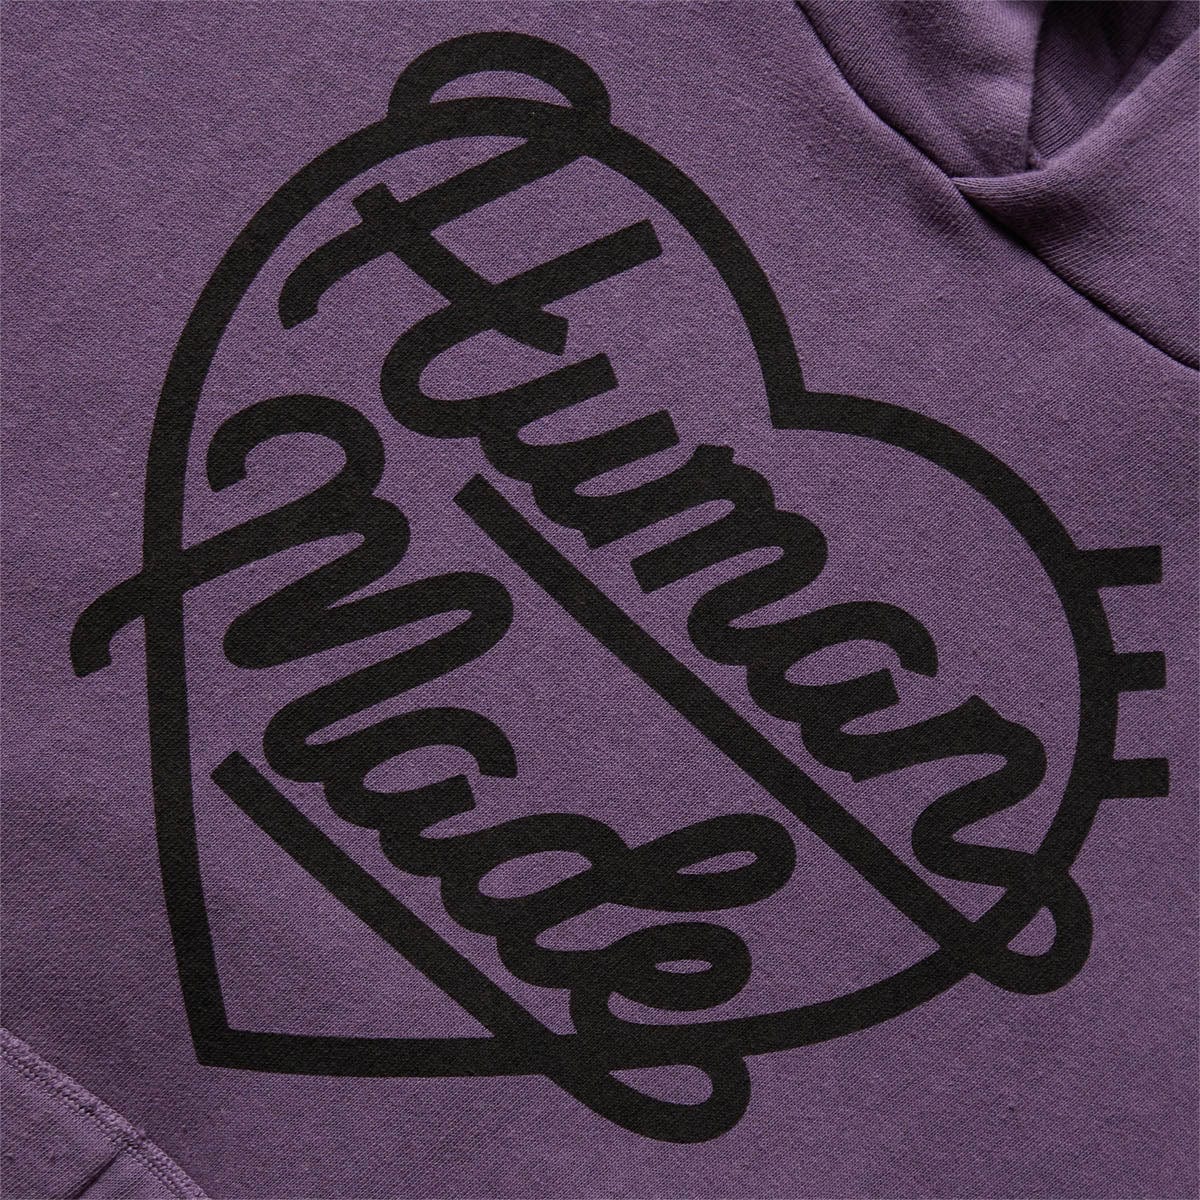 Human Made Hoodies & Sweatshirts HOODED SWEATSHIRT